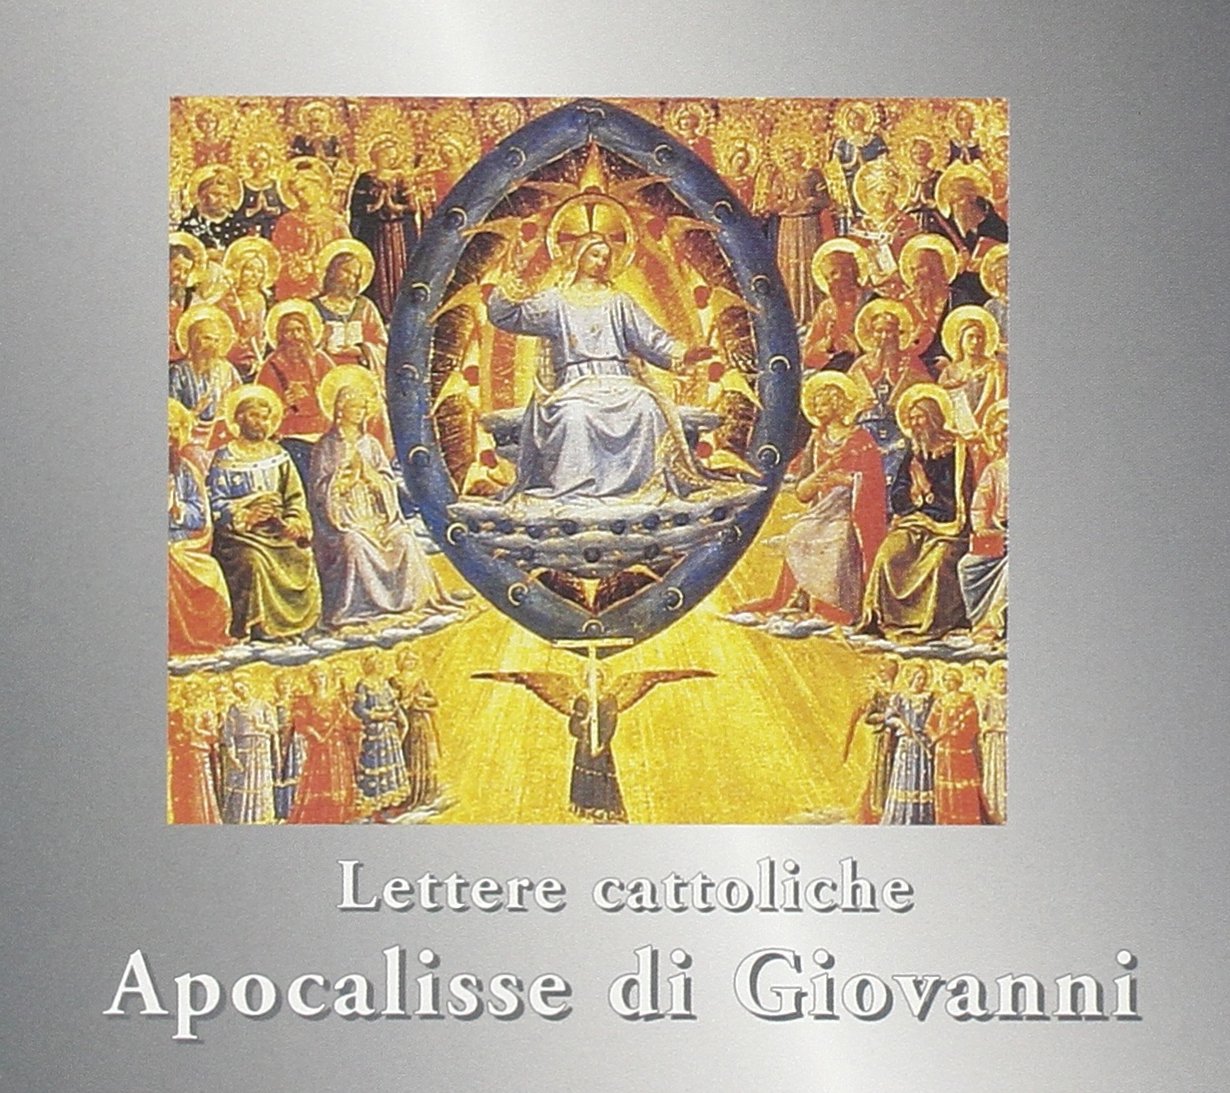 Audio Cd Lettere Cattoliche E Apost.3 Cd NUOVO SIGILLATO, EDIZIONE DEL 31/08/2005 DISPO ENTRO UN MESE, SU ORDINAZIONE